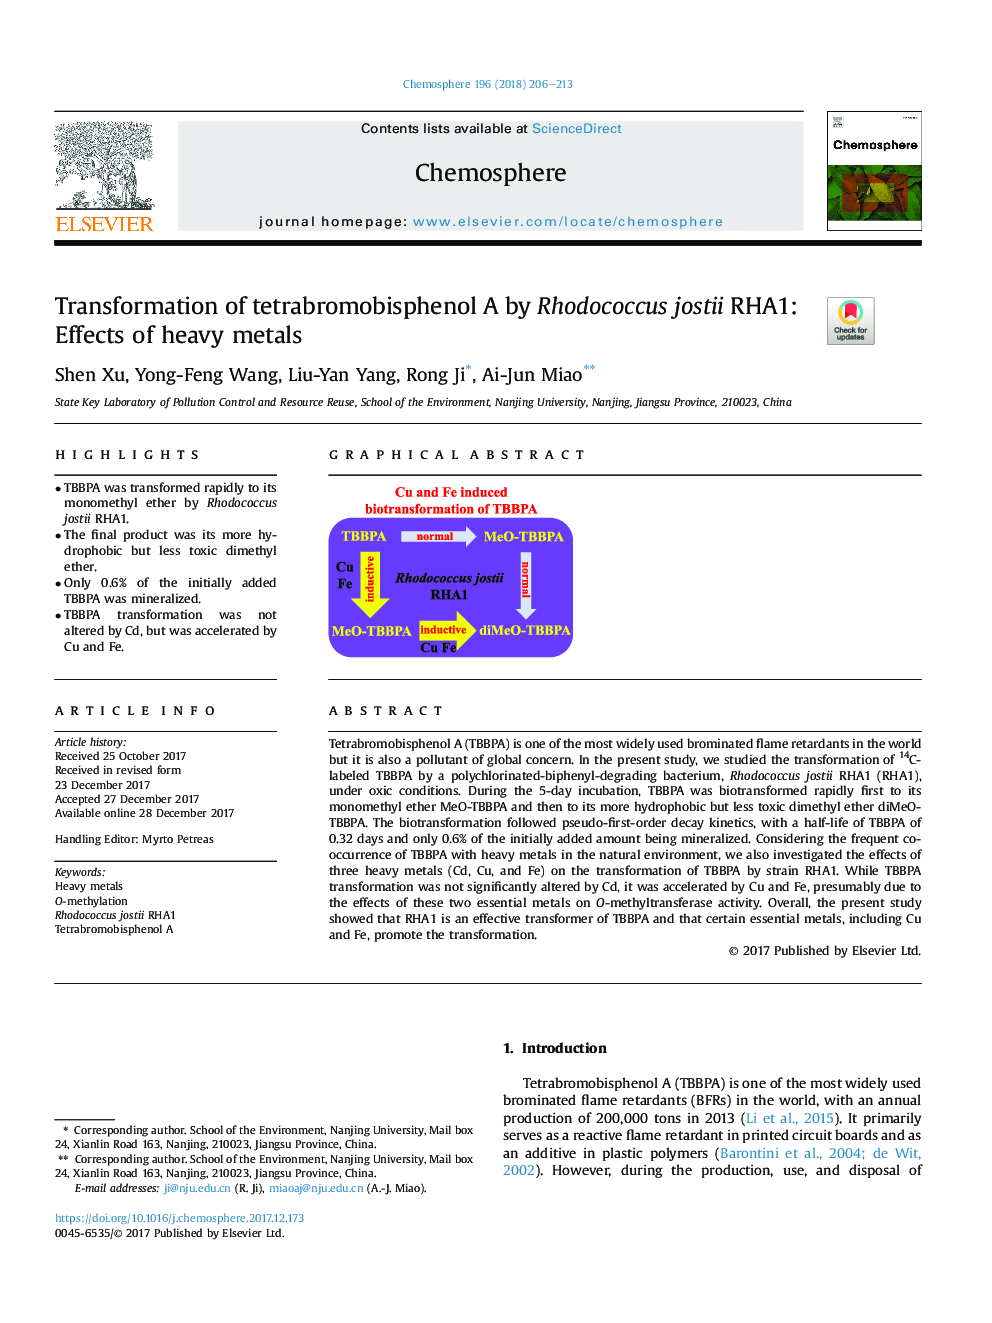 Transformation of tetrabromobisphenol A by Rhodococcus jostii RHA1: Effects of heavy metals